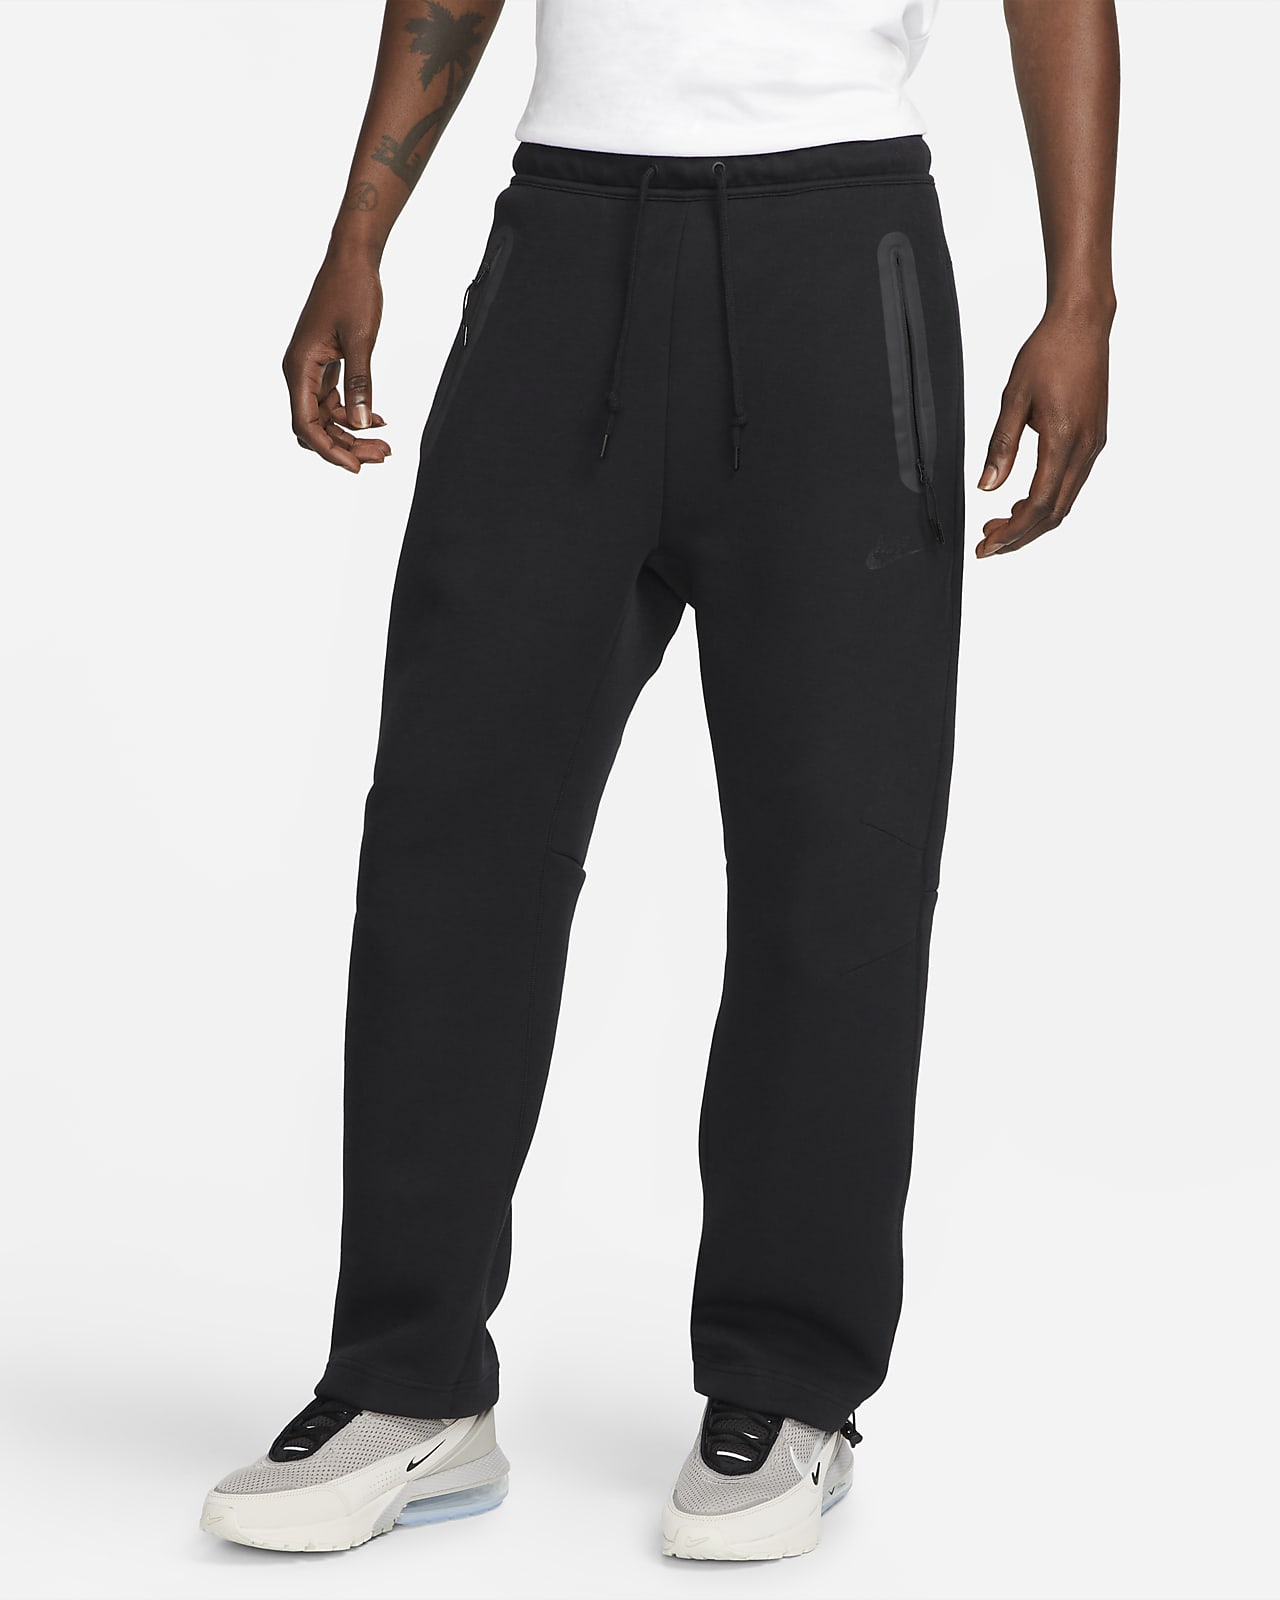 Nike Sportswear Tech Fleece Pantalons de xandall amb vora oberta - Home